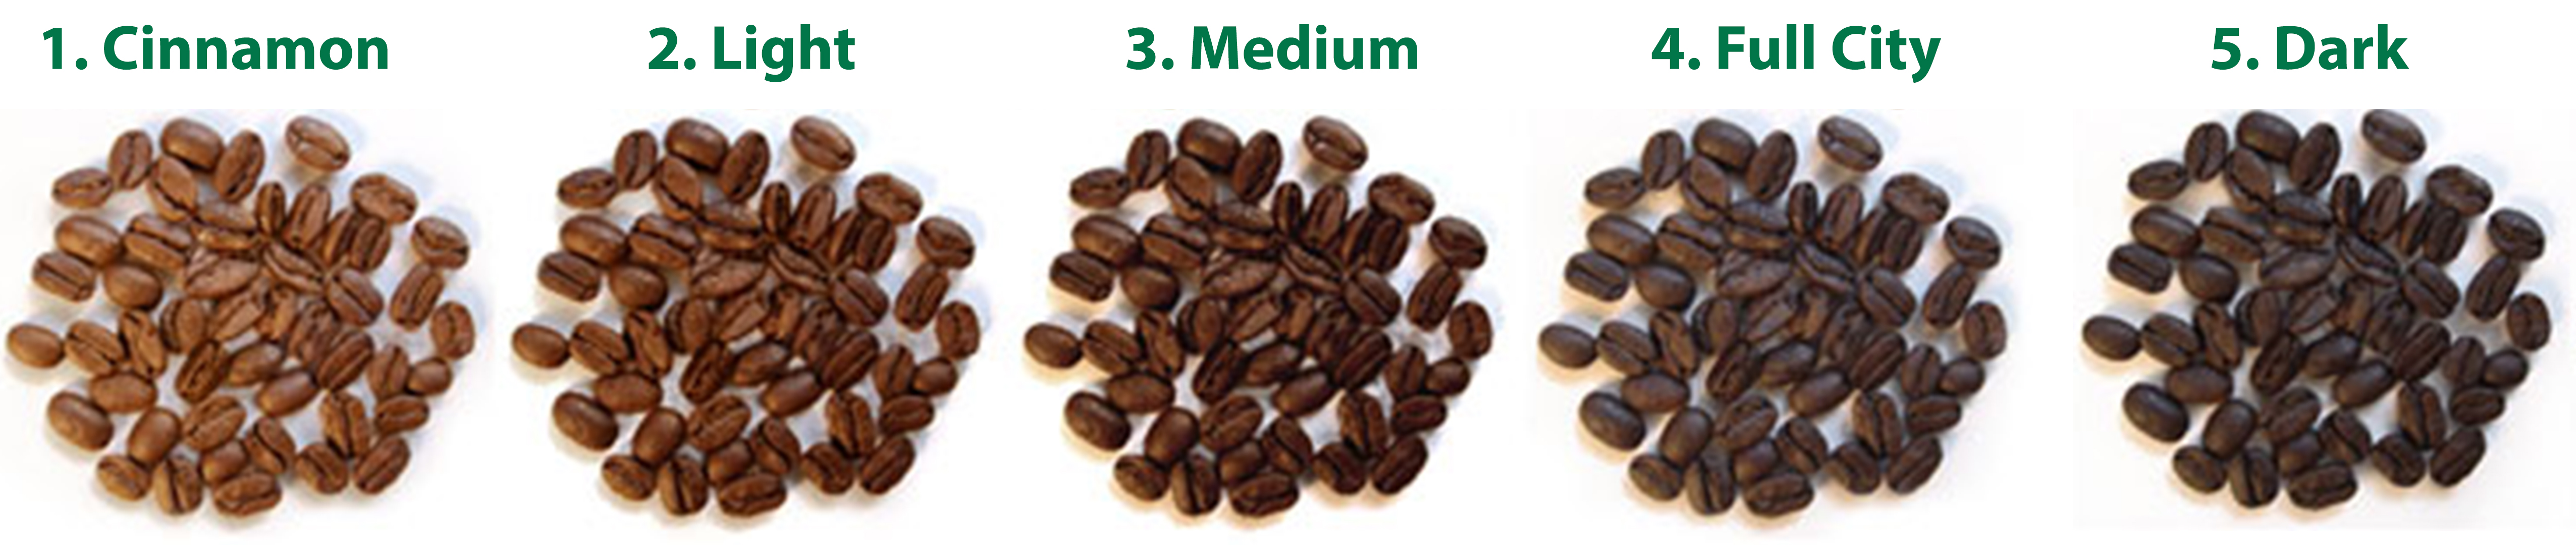 độ rang cà phê hạt